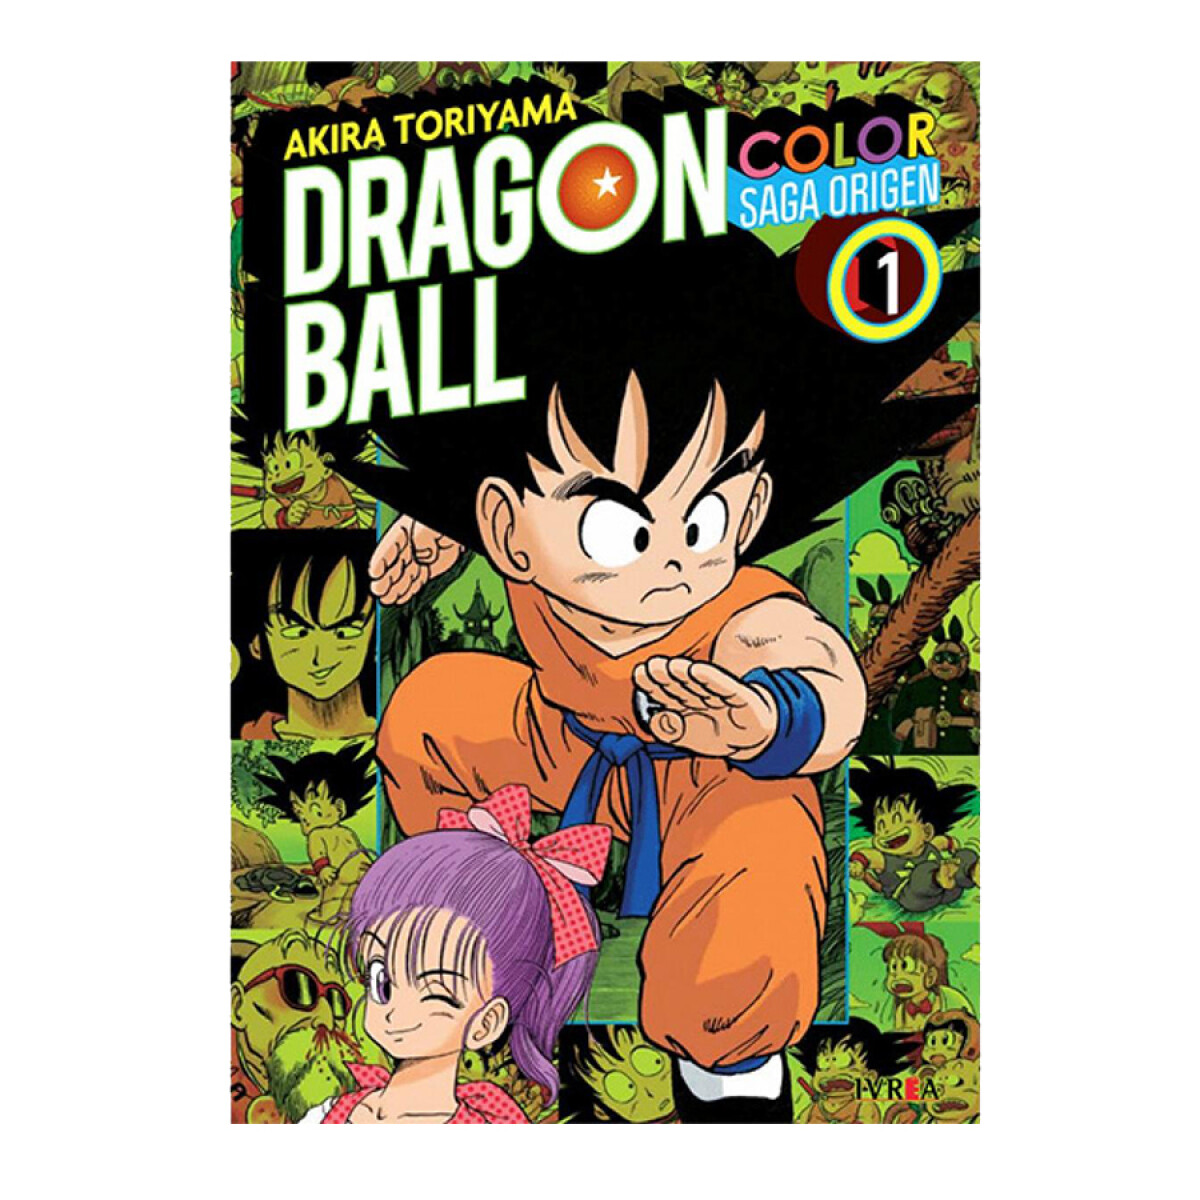 Dragon Ball [Color Saga Origen] Vol.1 